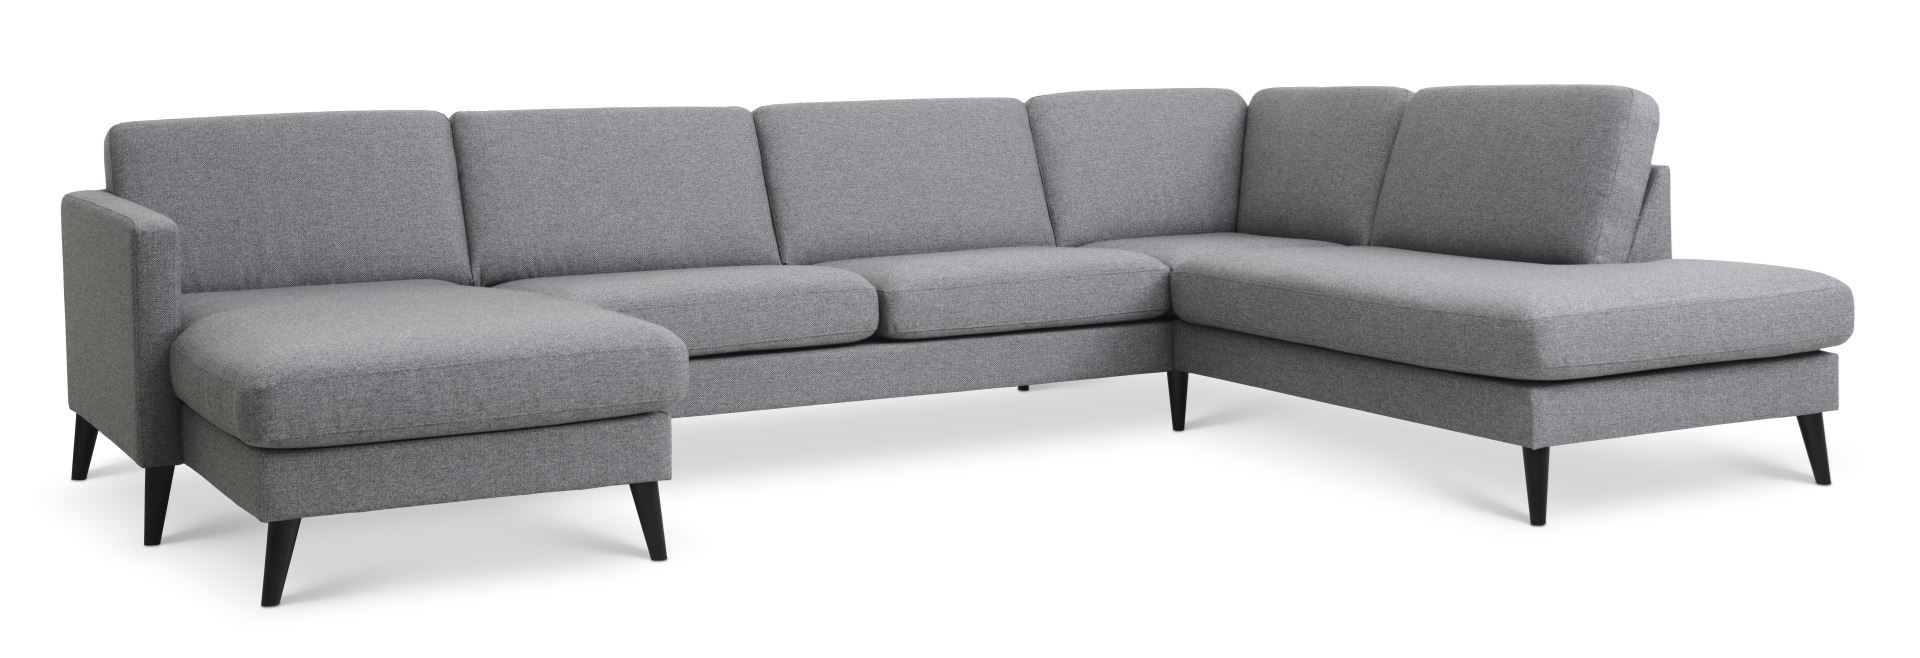 Ask sæt 55 U OE sofa, m. højre chaiselong - lys granitgrå polyester stof og sort træ